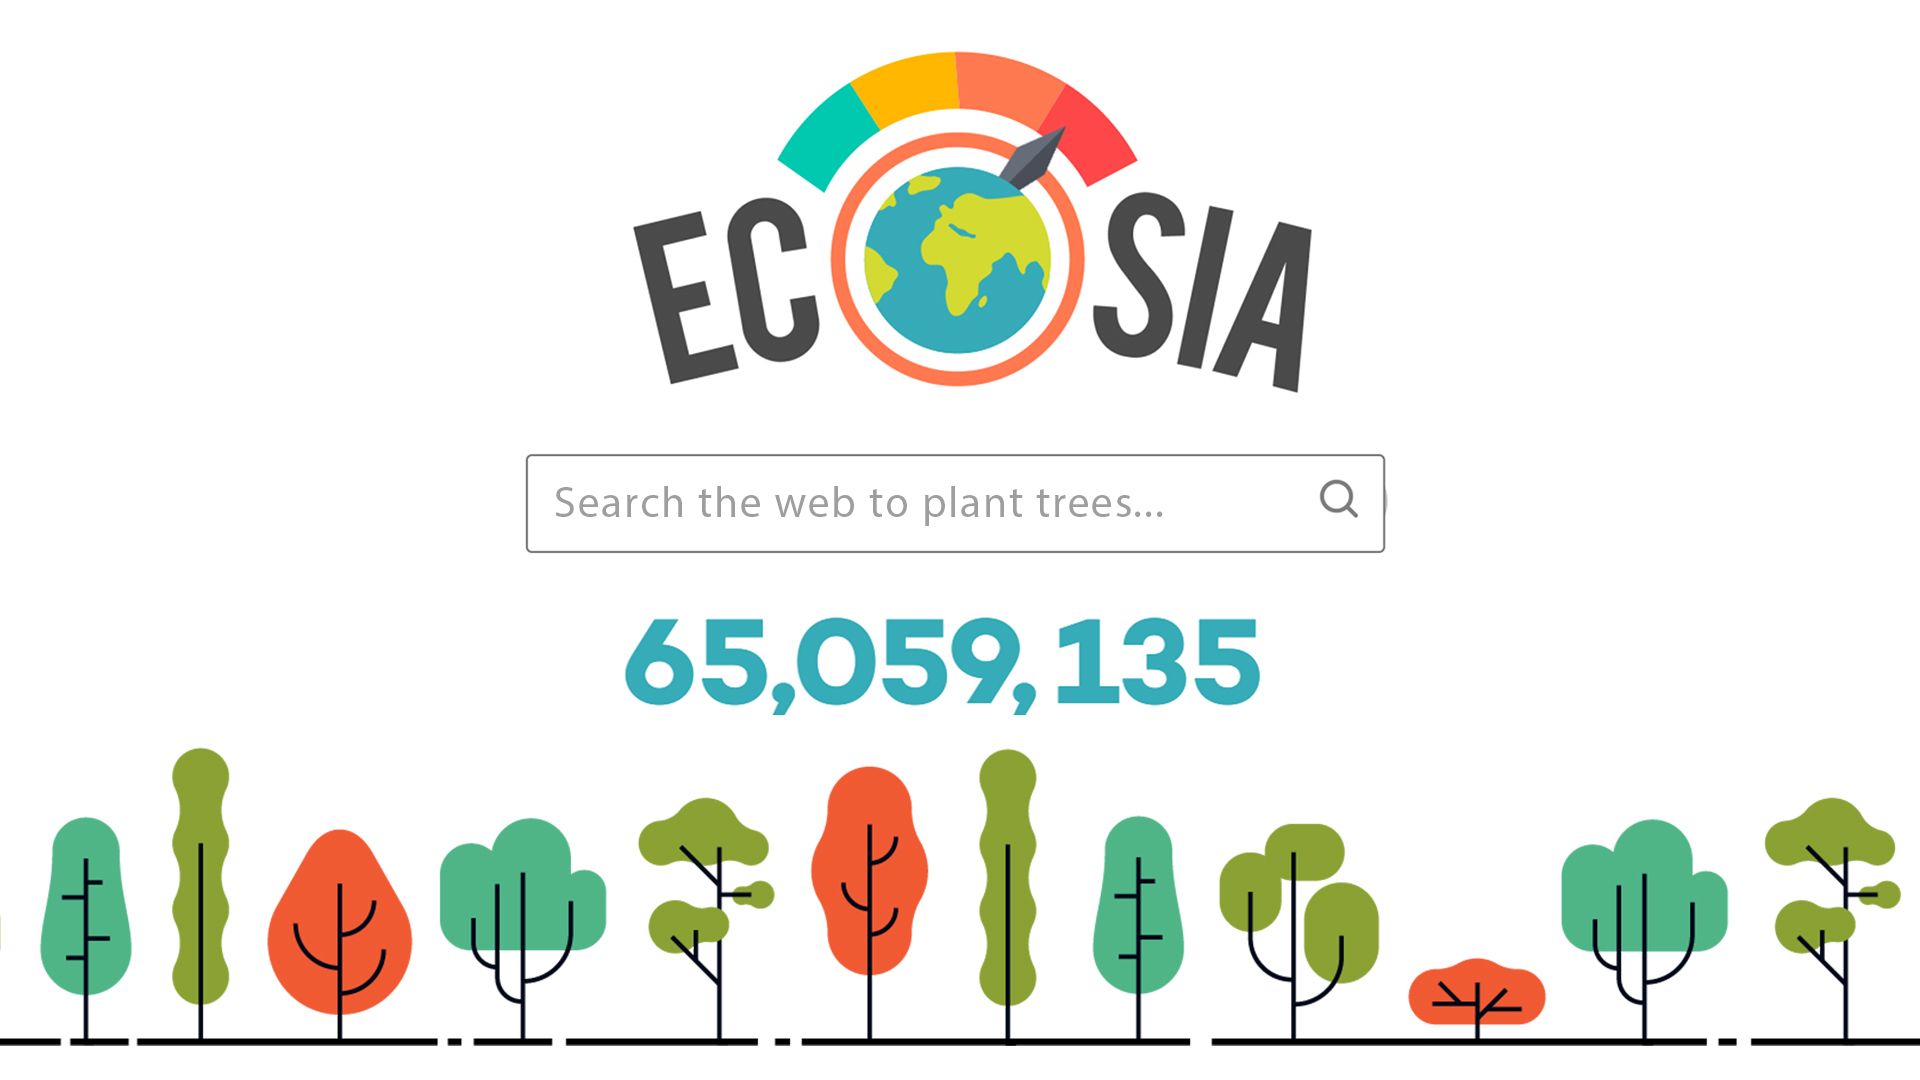 "Grüne Suchmaschine Ecosia startet ihren eigenen Browser